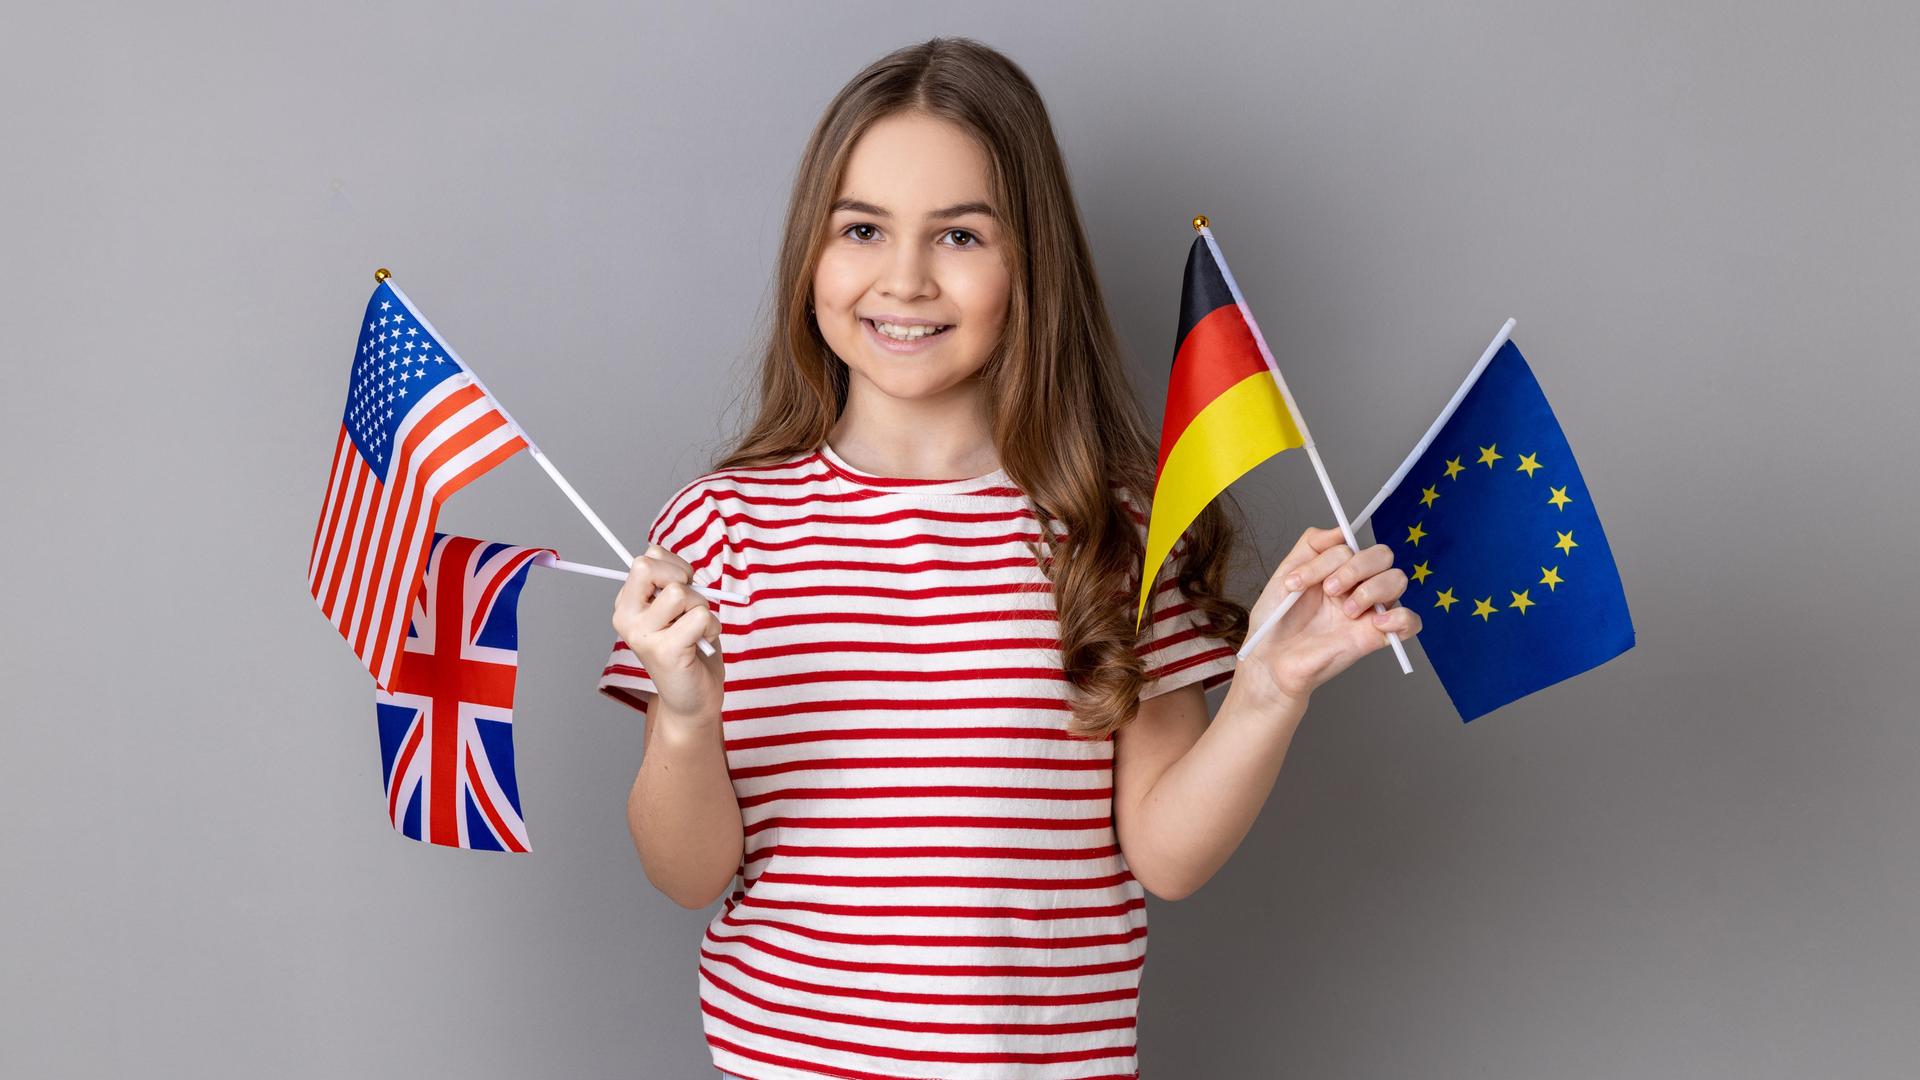 Ein lächelndes Mädchen hält die Fahnen Deutschlands, Großbritanniens, der USA und der Europäischen Union.